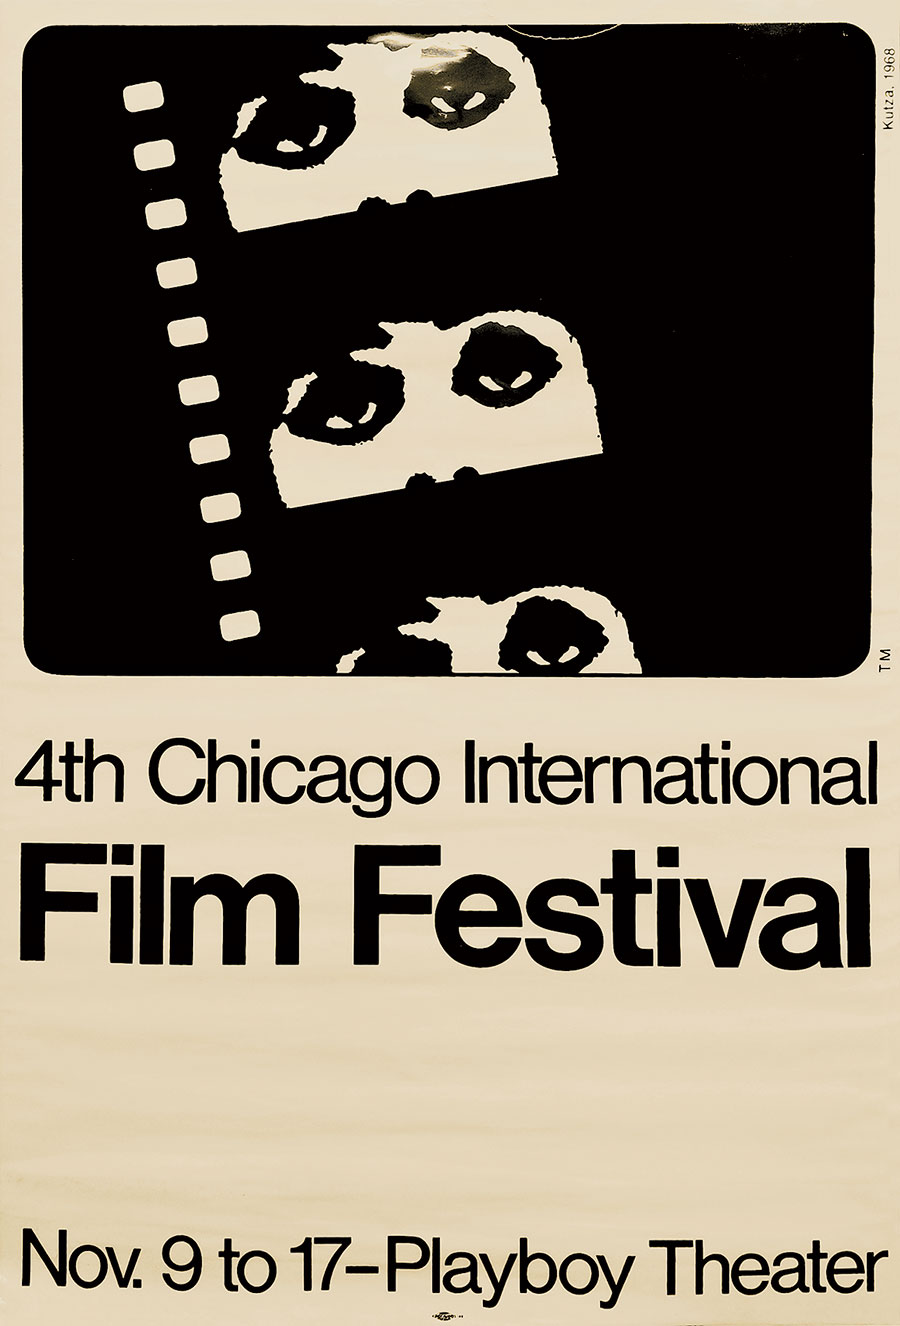 Chicago International Film Festival poster